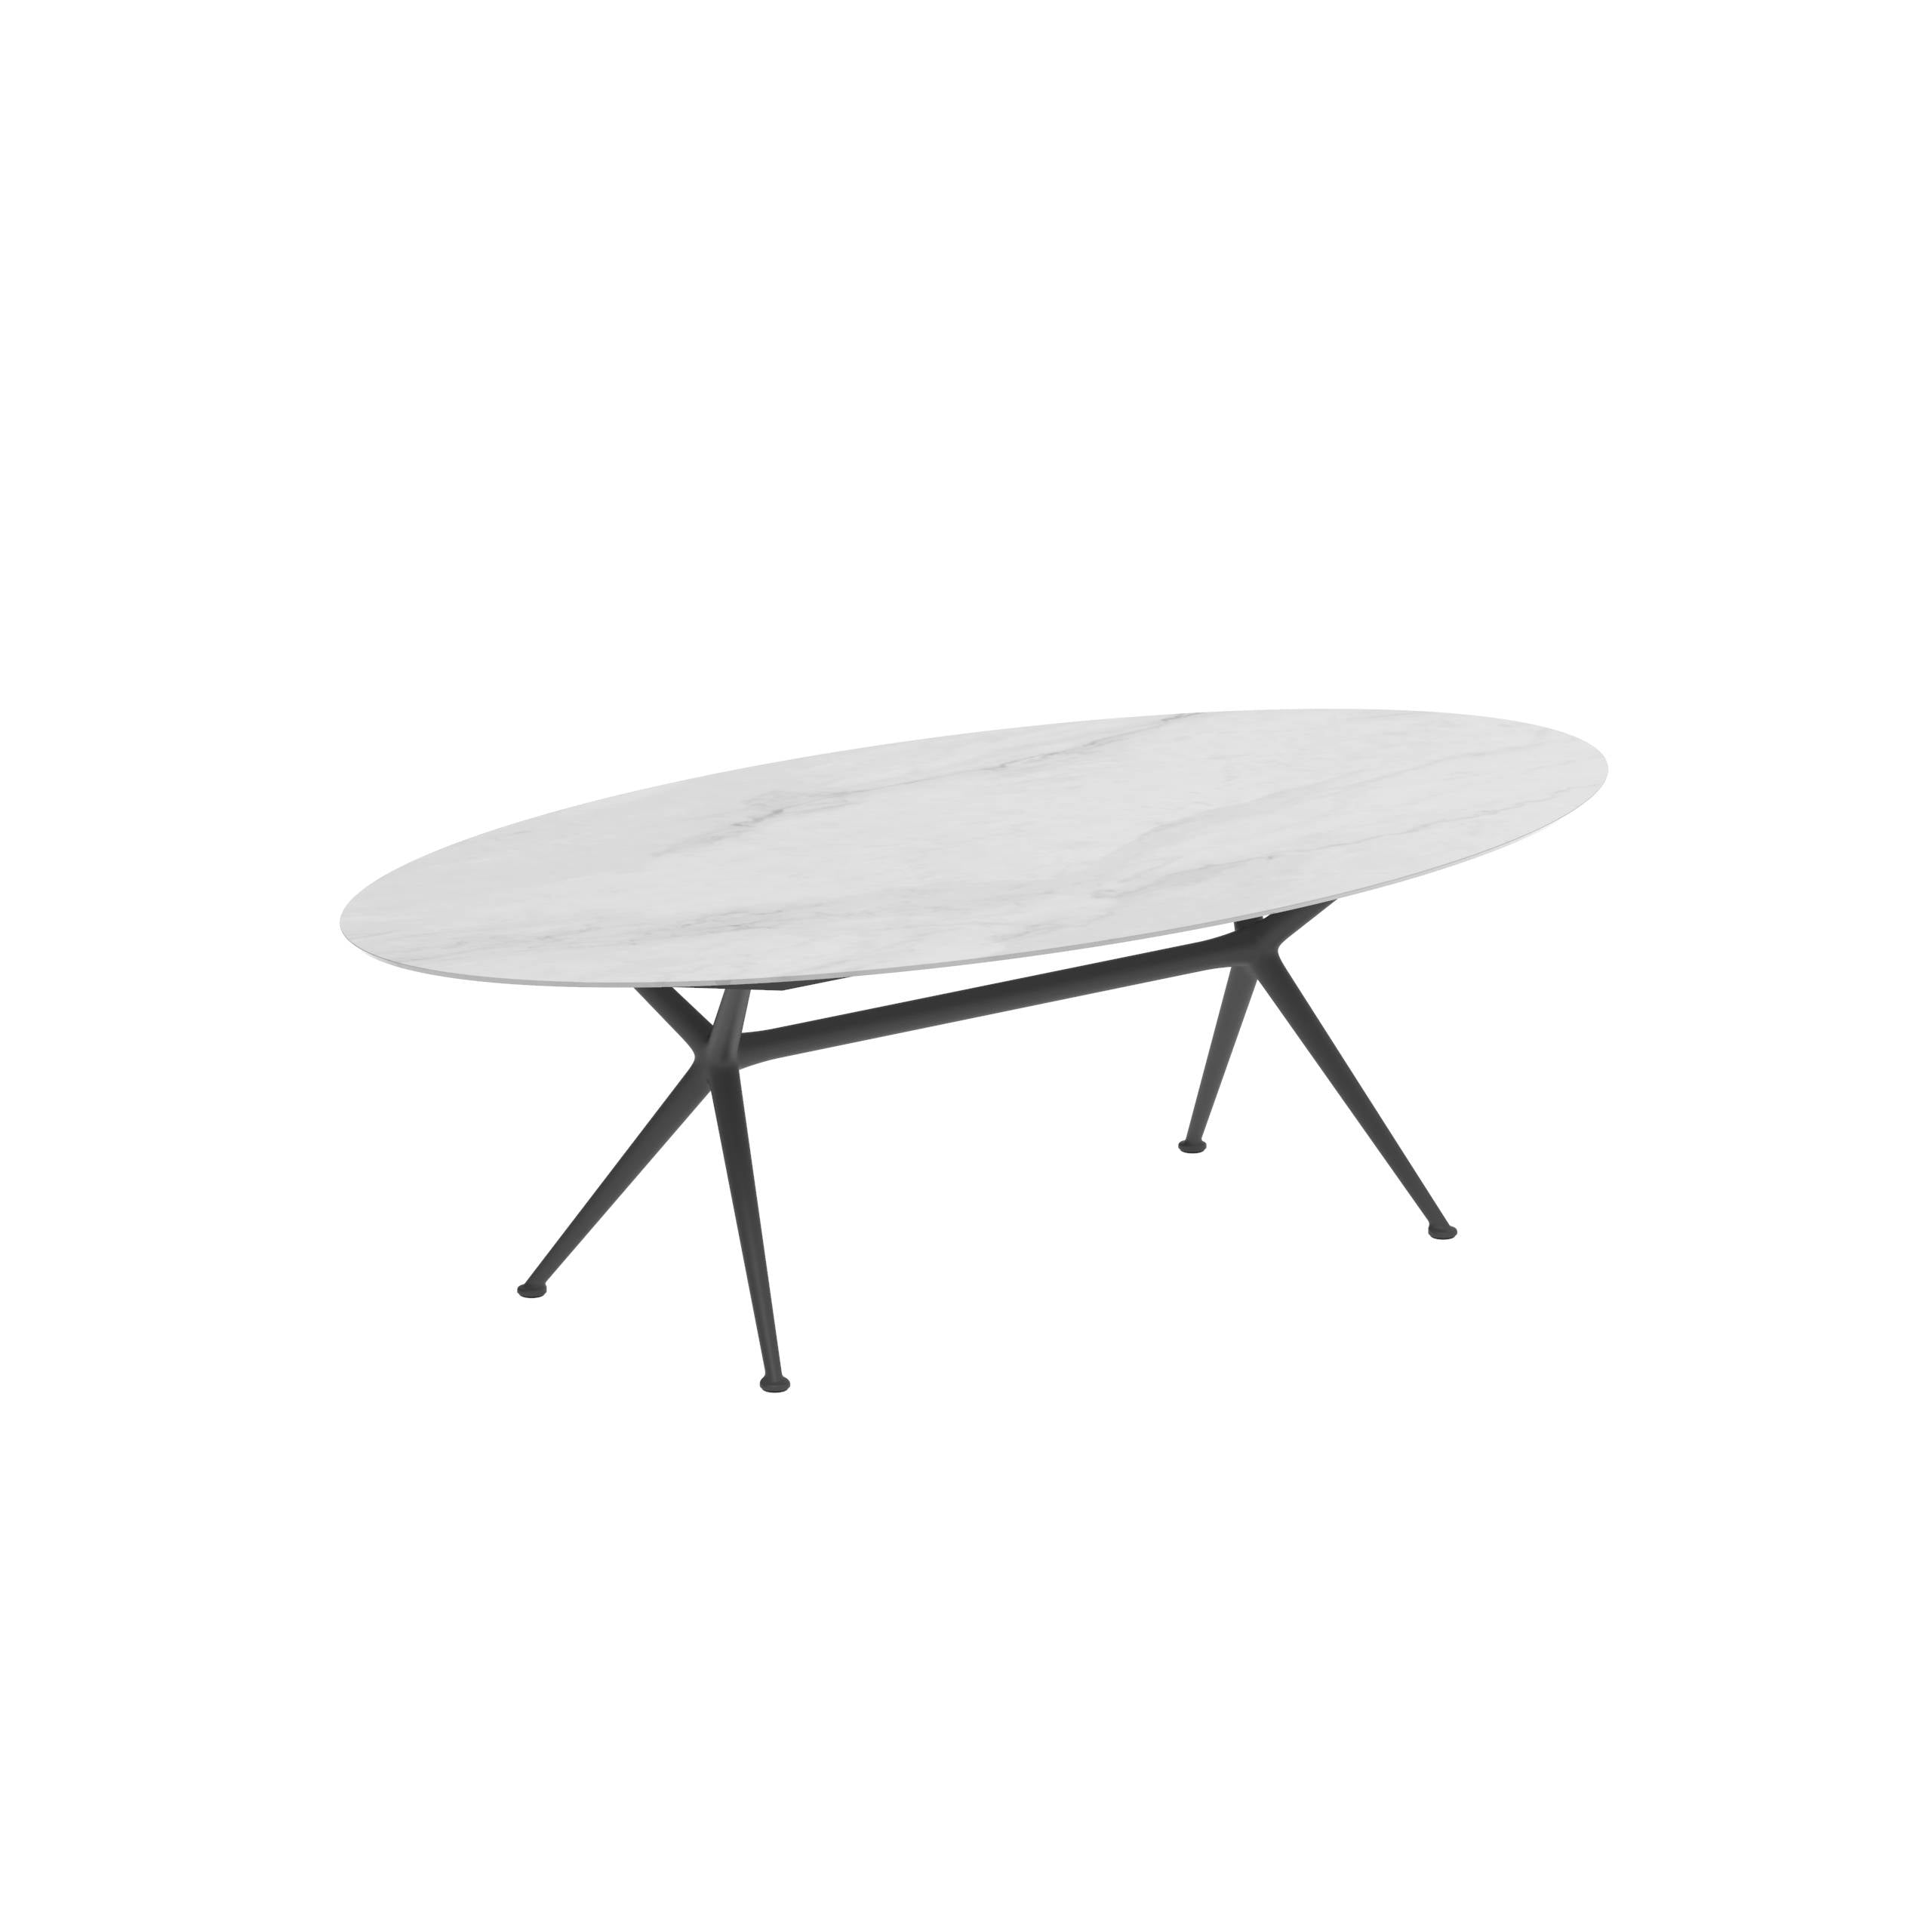 Exes Table Ellipse 250x130cm Alu Legs Anthracite - Table Top Ceramic Bianco Statuario